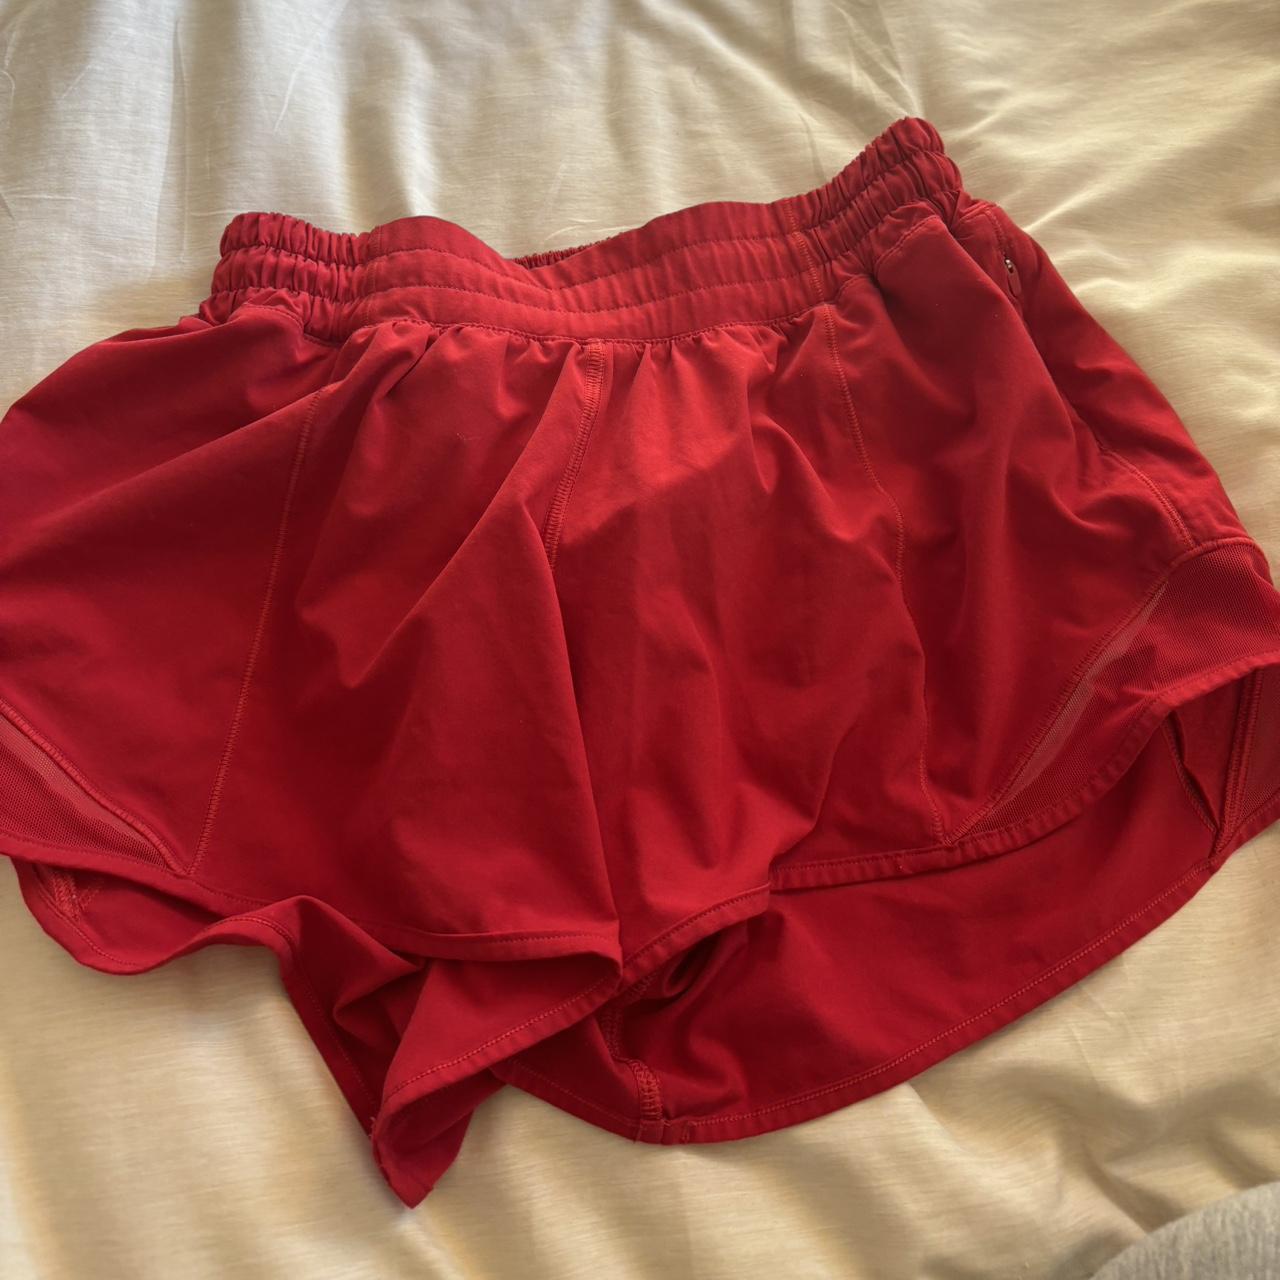 Lululemon running shorts Red Super comfy just don’t... - Depop